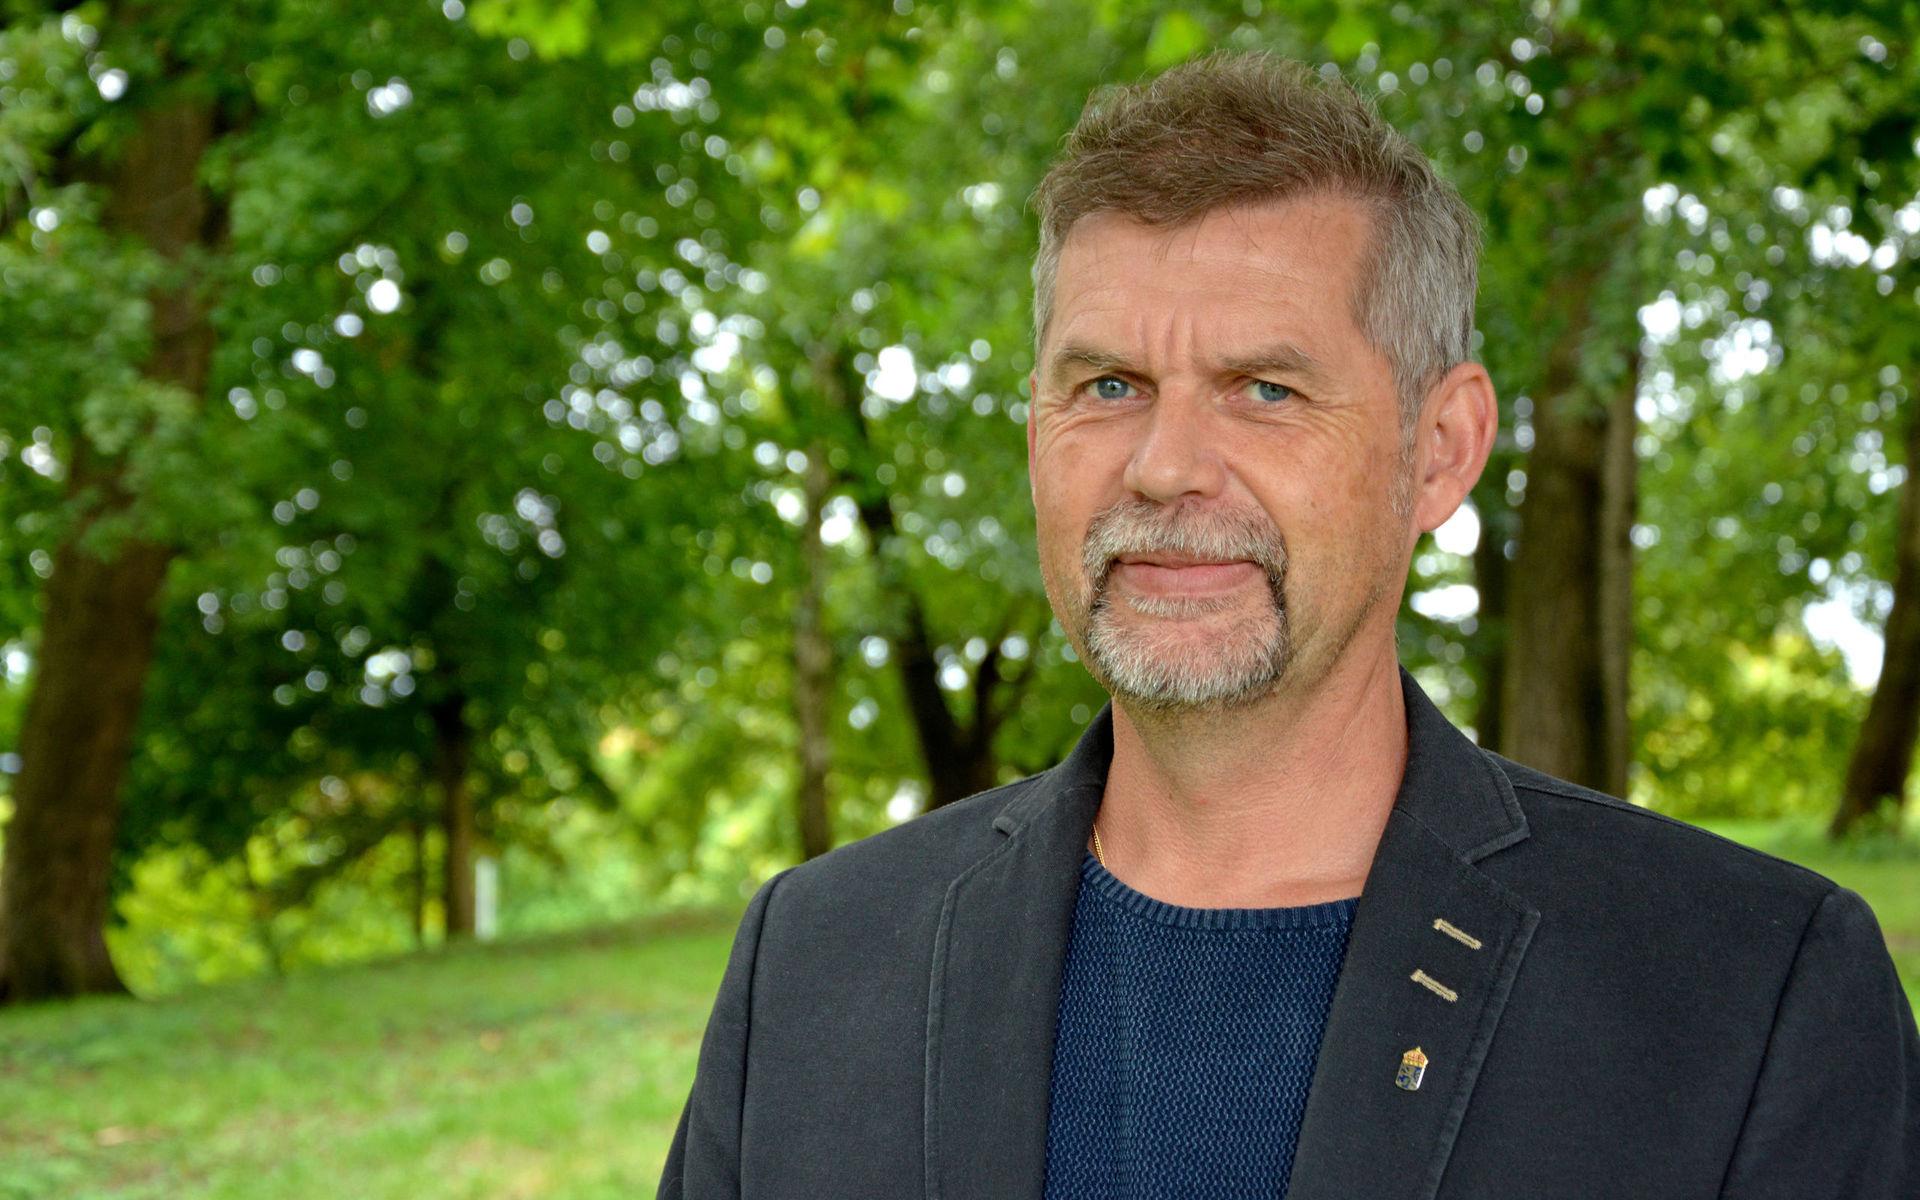 Martin Broberg, naturvårdshandläggare på Länsstyrelsen Halland tycker inte att det finns anledning till rädsla i skogen. Däremot ska man &quot;visa respekt för djuren och ge varandra levnadsutrymme&quot;.